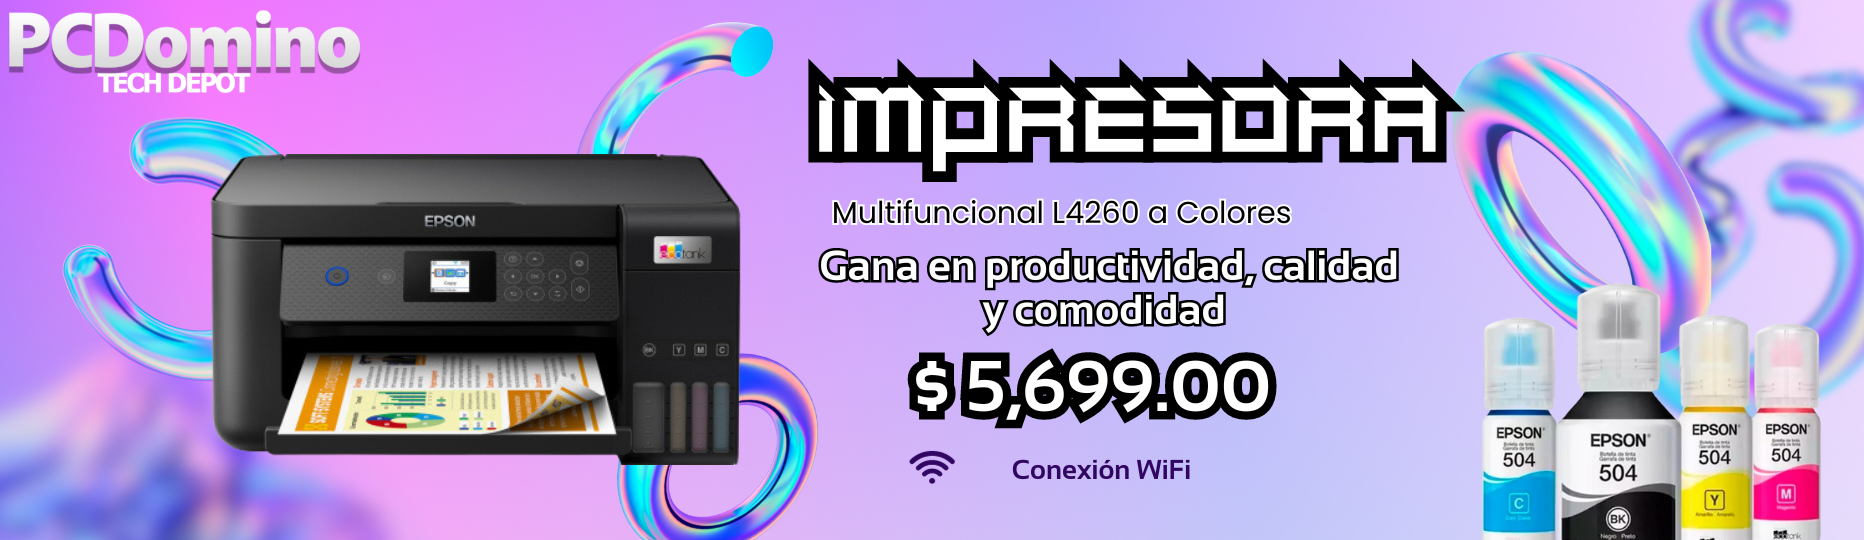 Laser Toner - Venta de equipo de computo - Computadoras, laptops y  accesorios de cómputo en Monterrey